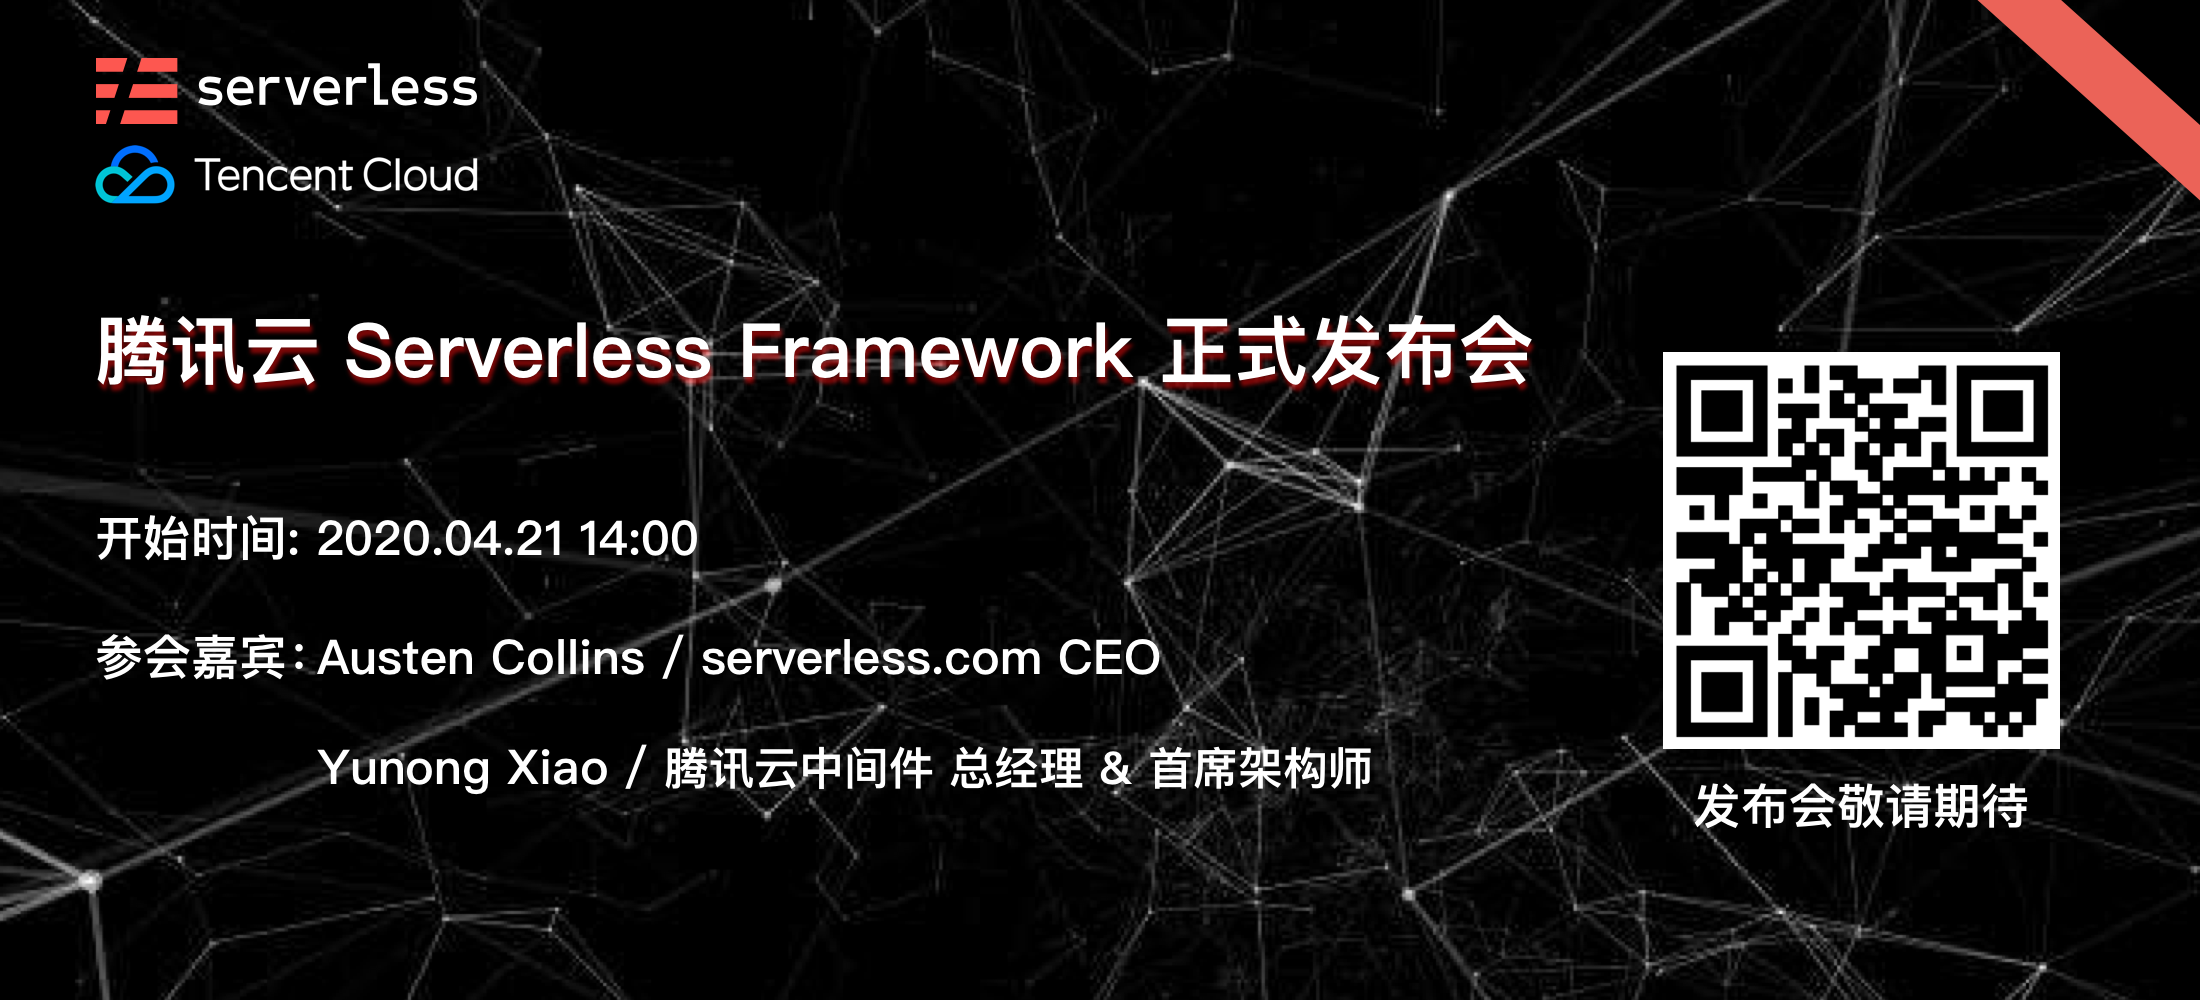 腾讯云 Serverless Framework 正式发布公告